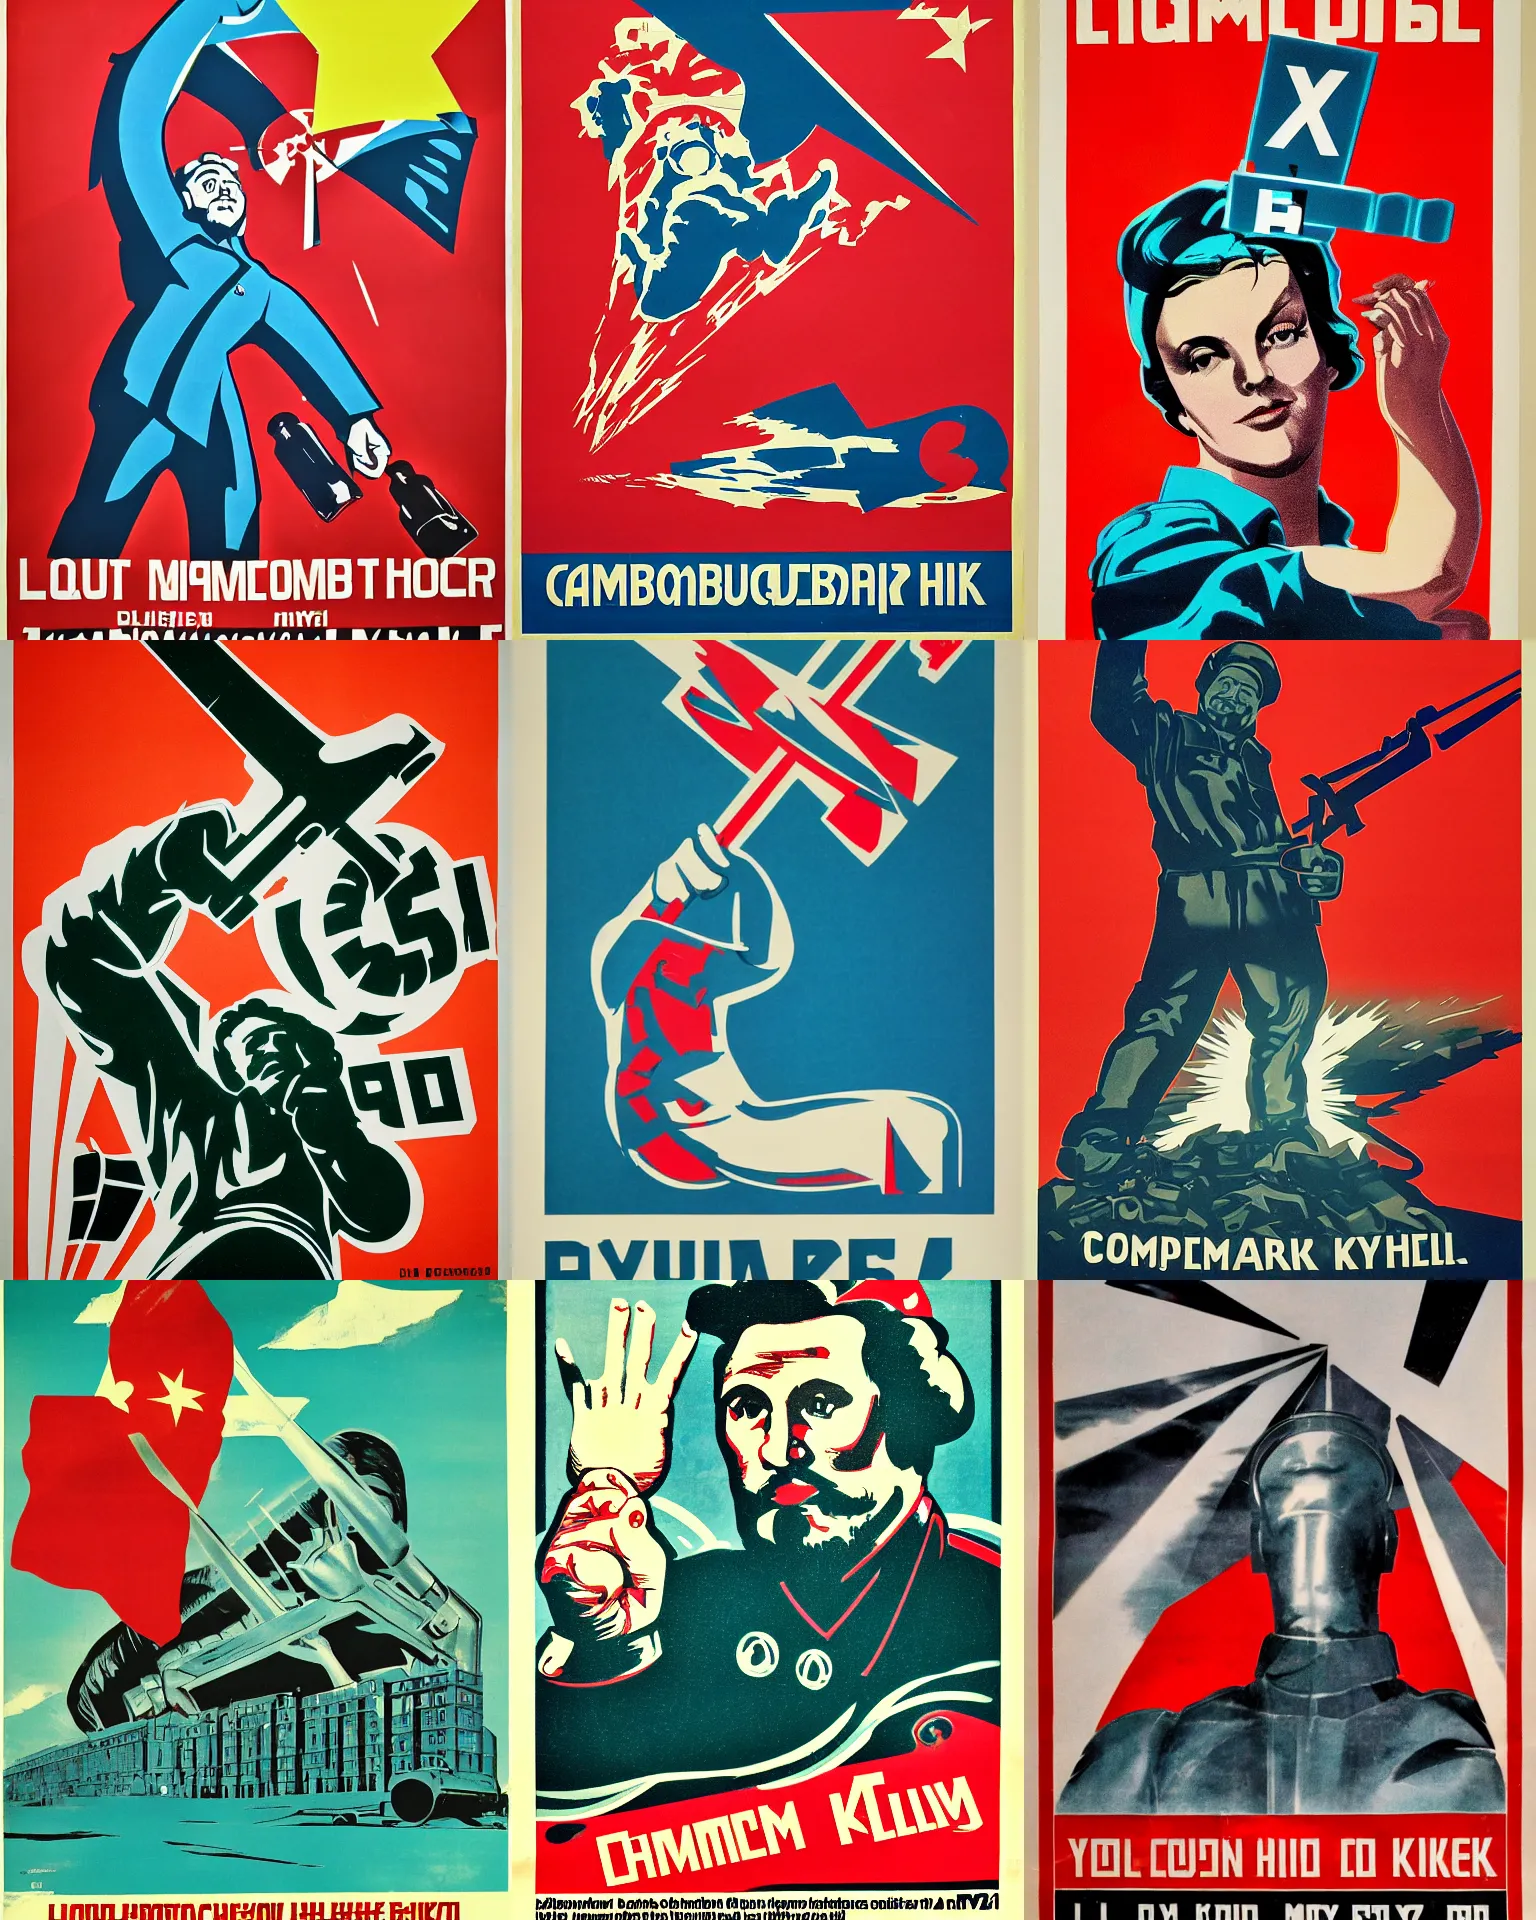 Prompt: communist propaganda poster, liquid chrome, y 2 k aesthetic